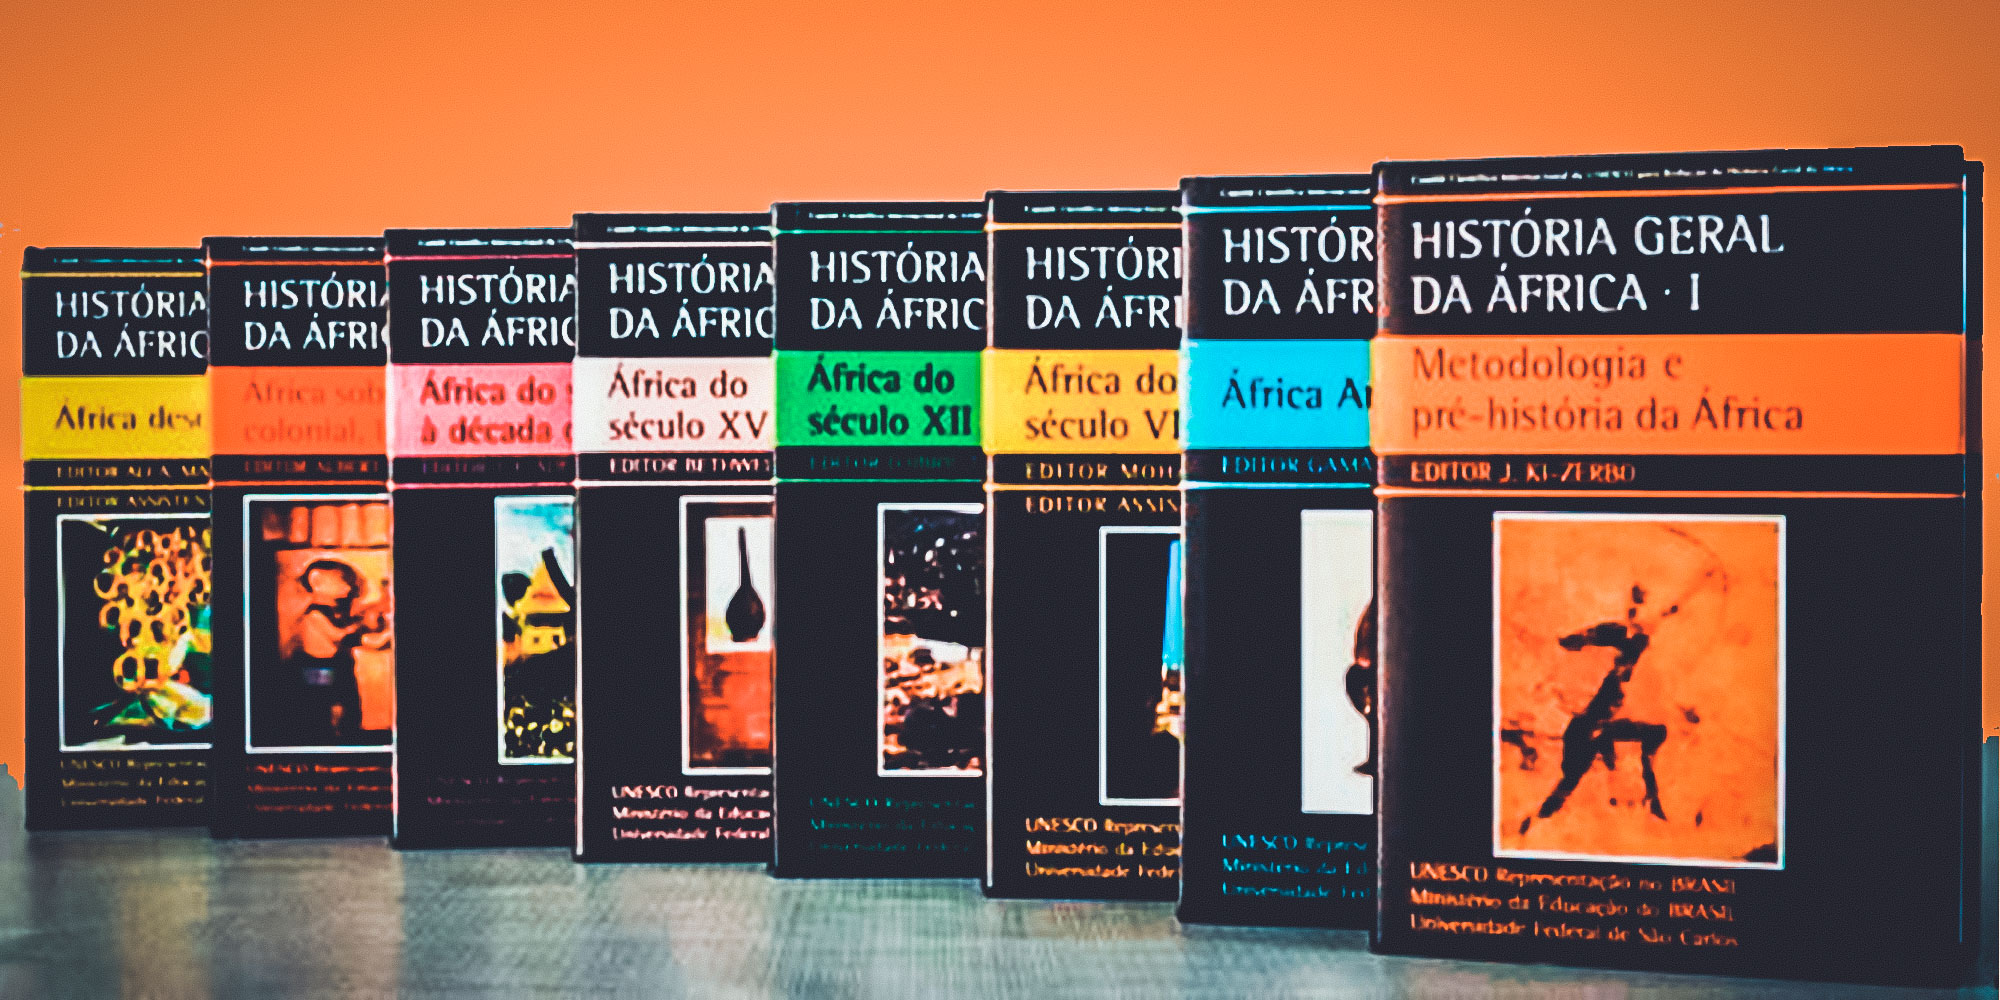 Descubra a África: Coleção “História Geral da África” em PDF